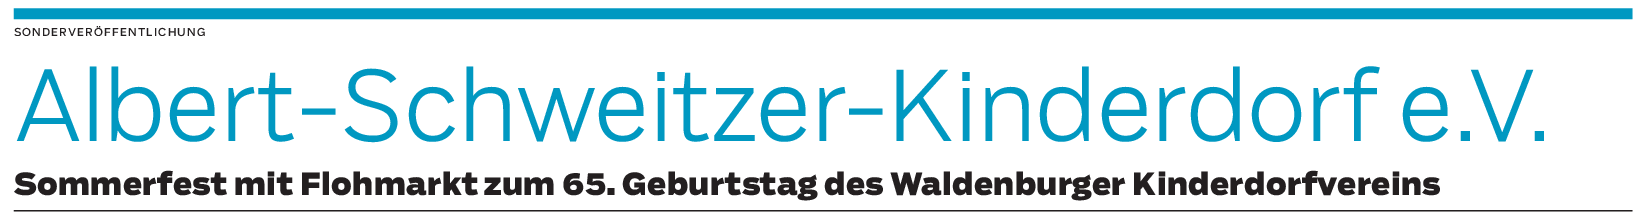 Albert-Schweitzer-Kinderdorf in Waldenburg: „Wir teilen Werte und laden zum Sommerfest und Flohmarkt ein“ 